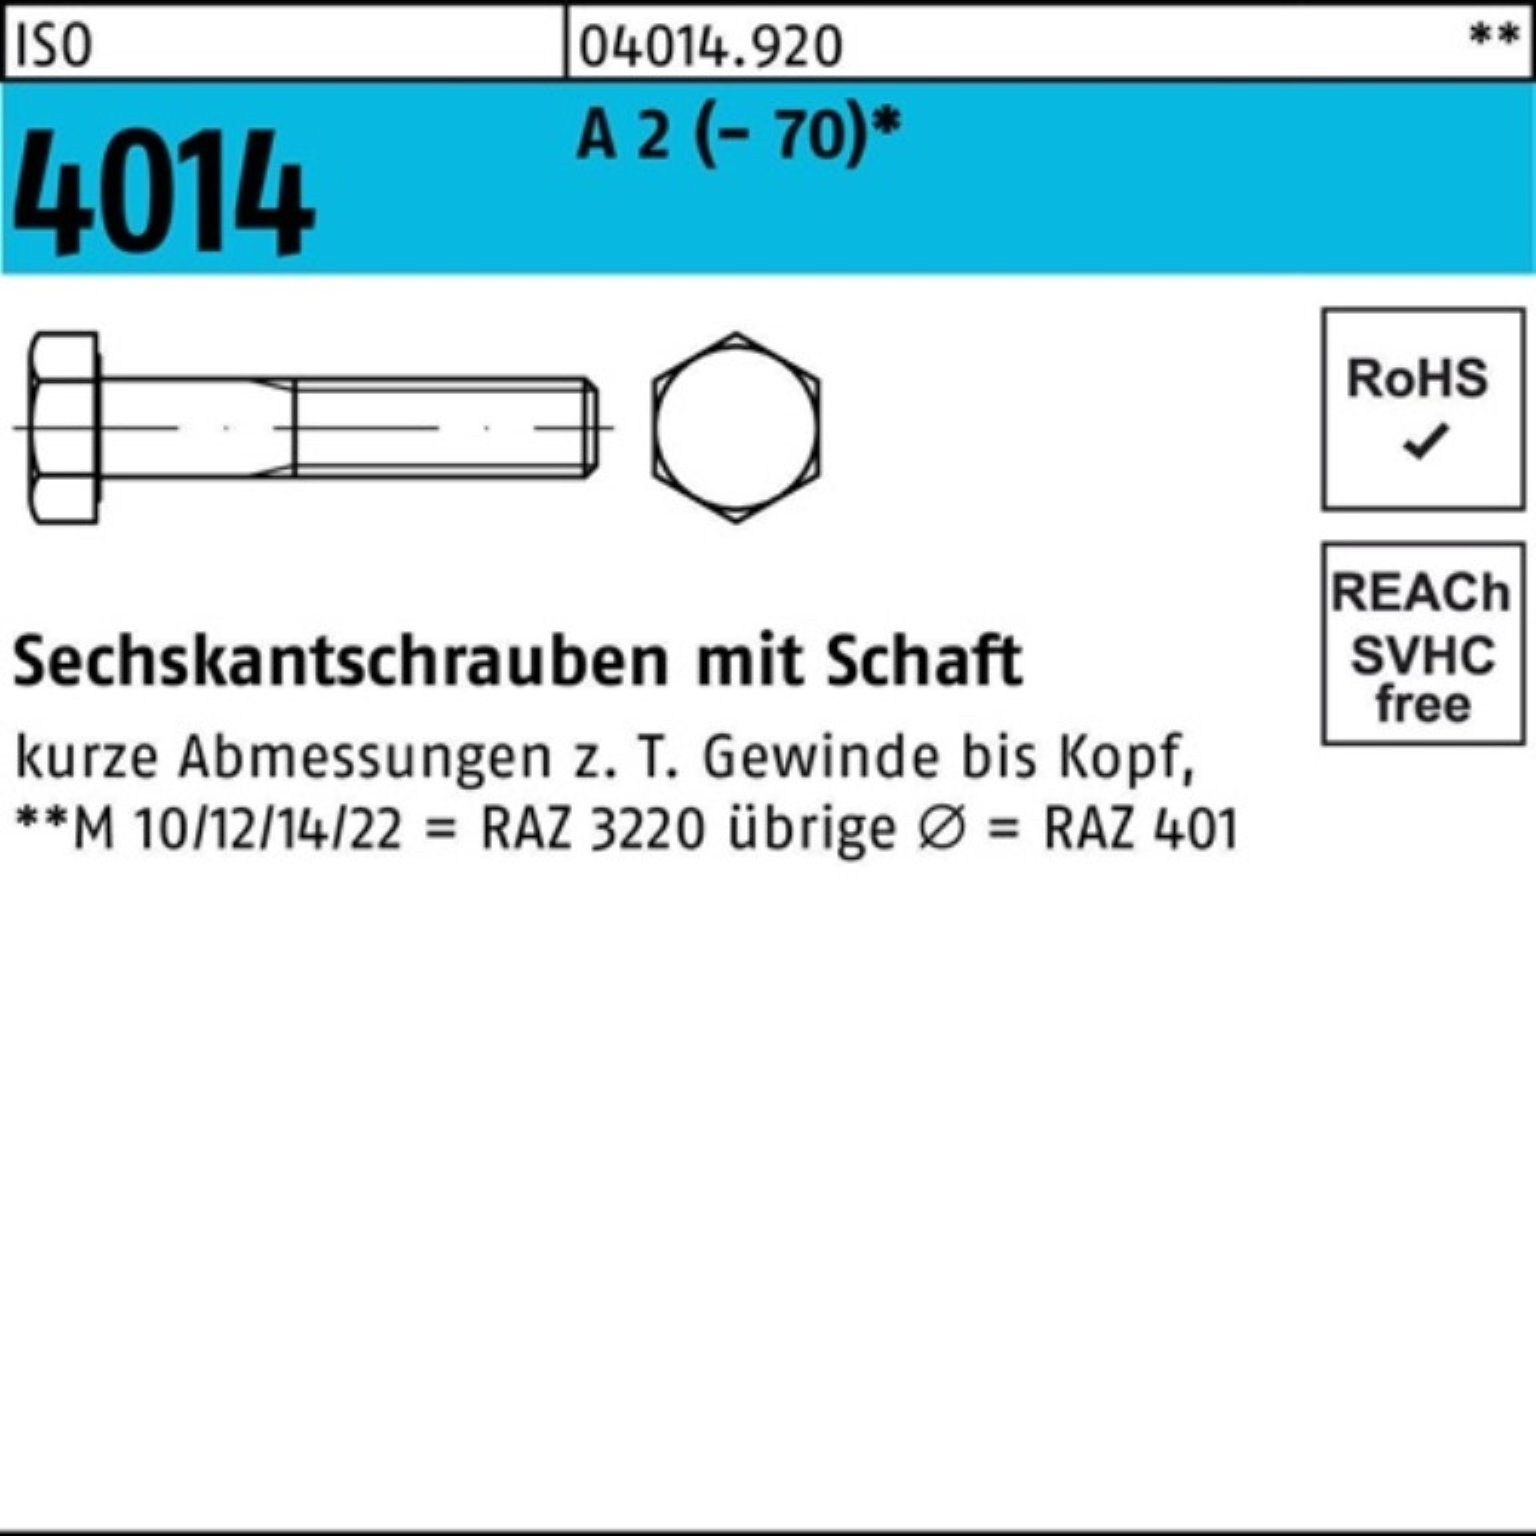 Bufab Sechskantschraube 100er Pack Sechskantschraube ISO 4014 Schaft M27x 140 A 2 (70) 1 St